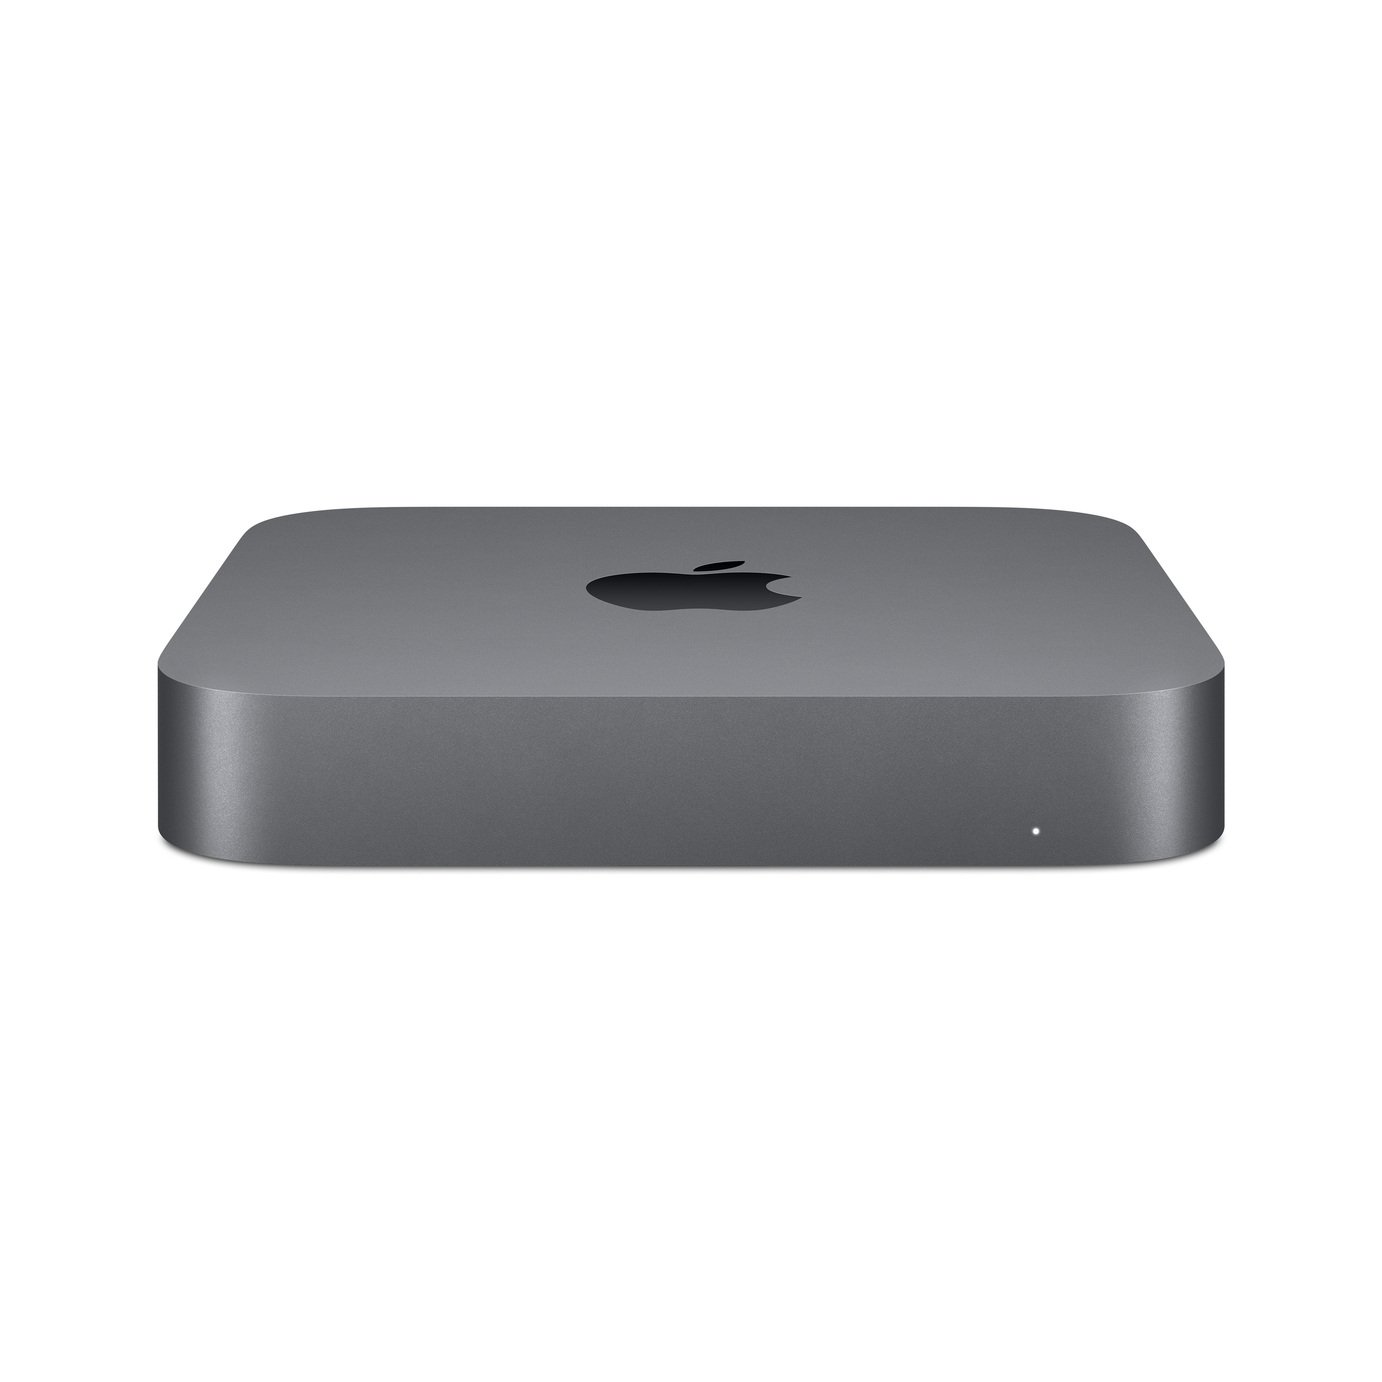 Apple Mac Mini 2020 i3 8GB 256GB Desktop Review